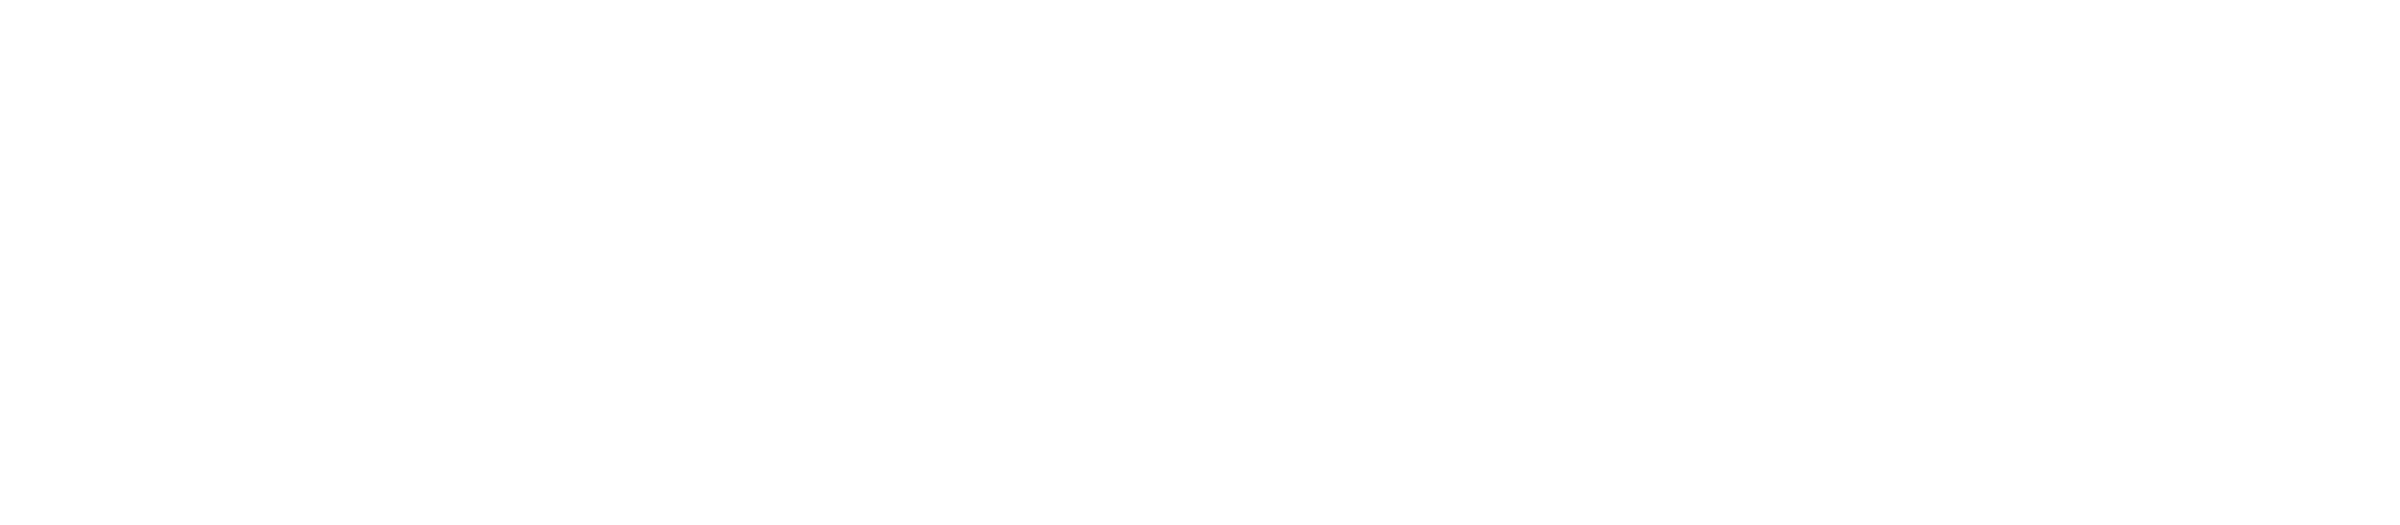 Home-Logos-1